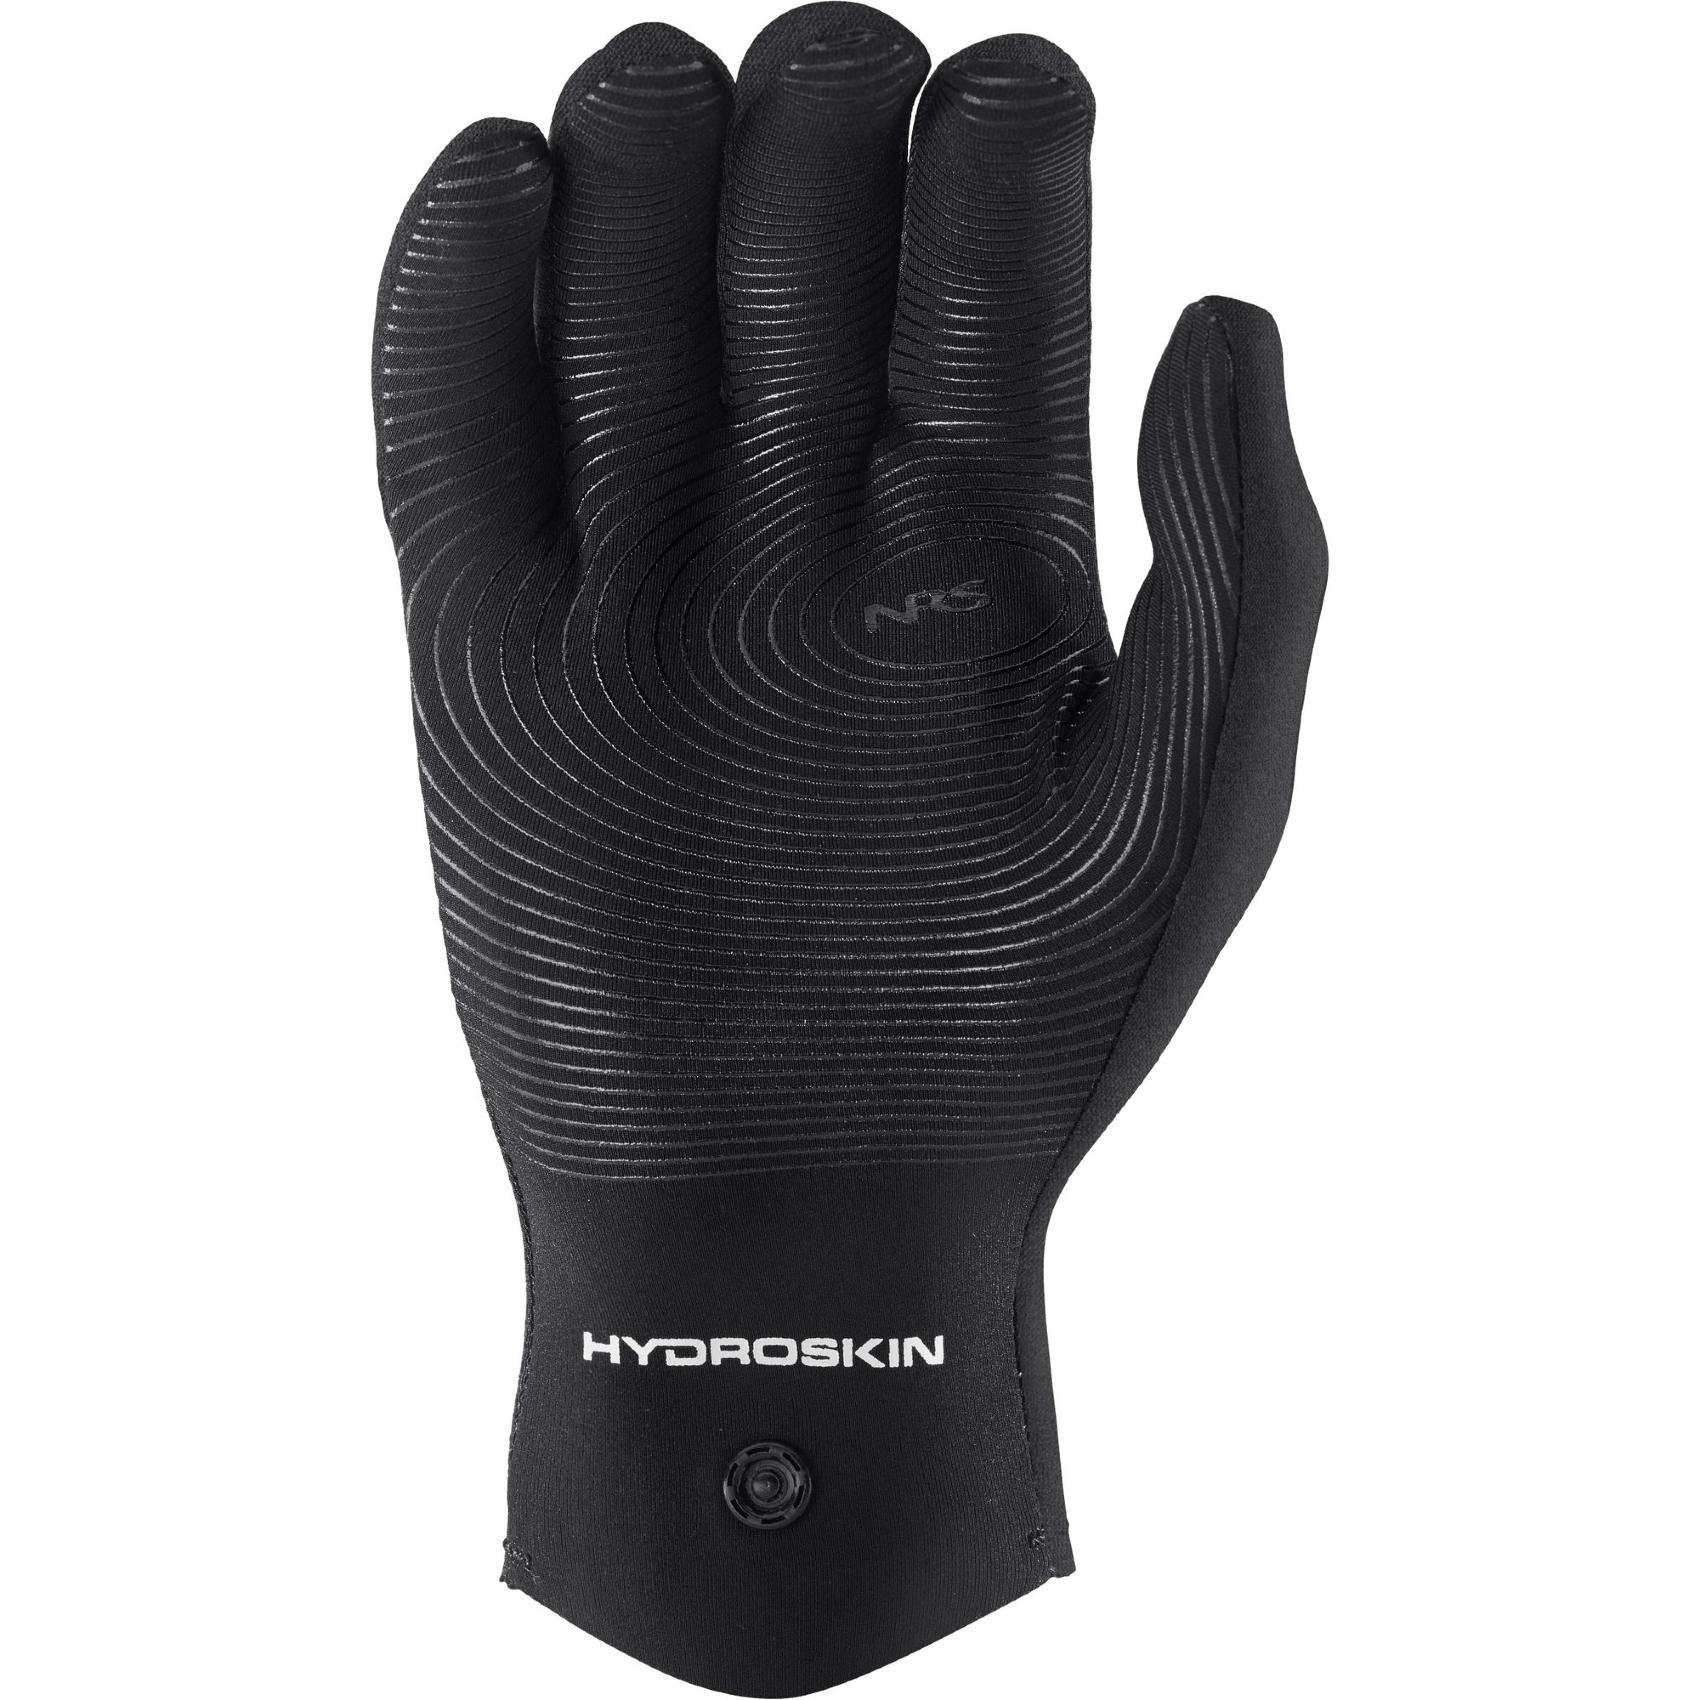 NRS HydroSkin Paddling Gloves, Men's